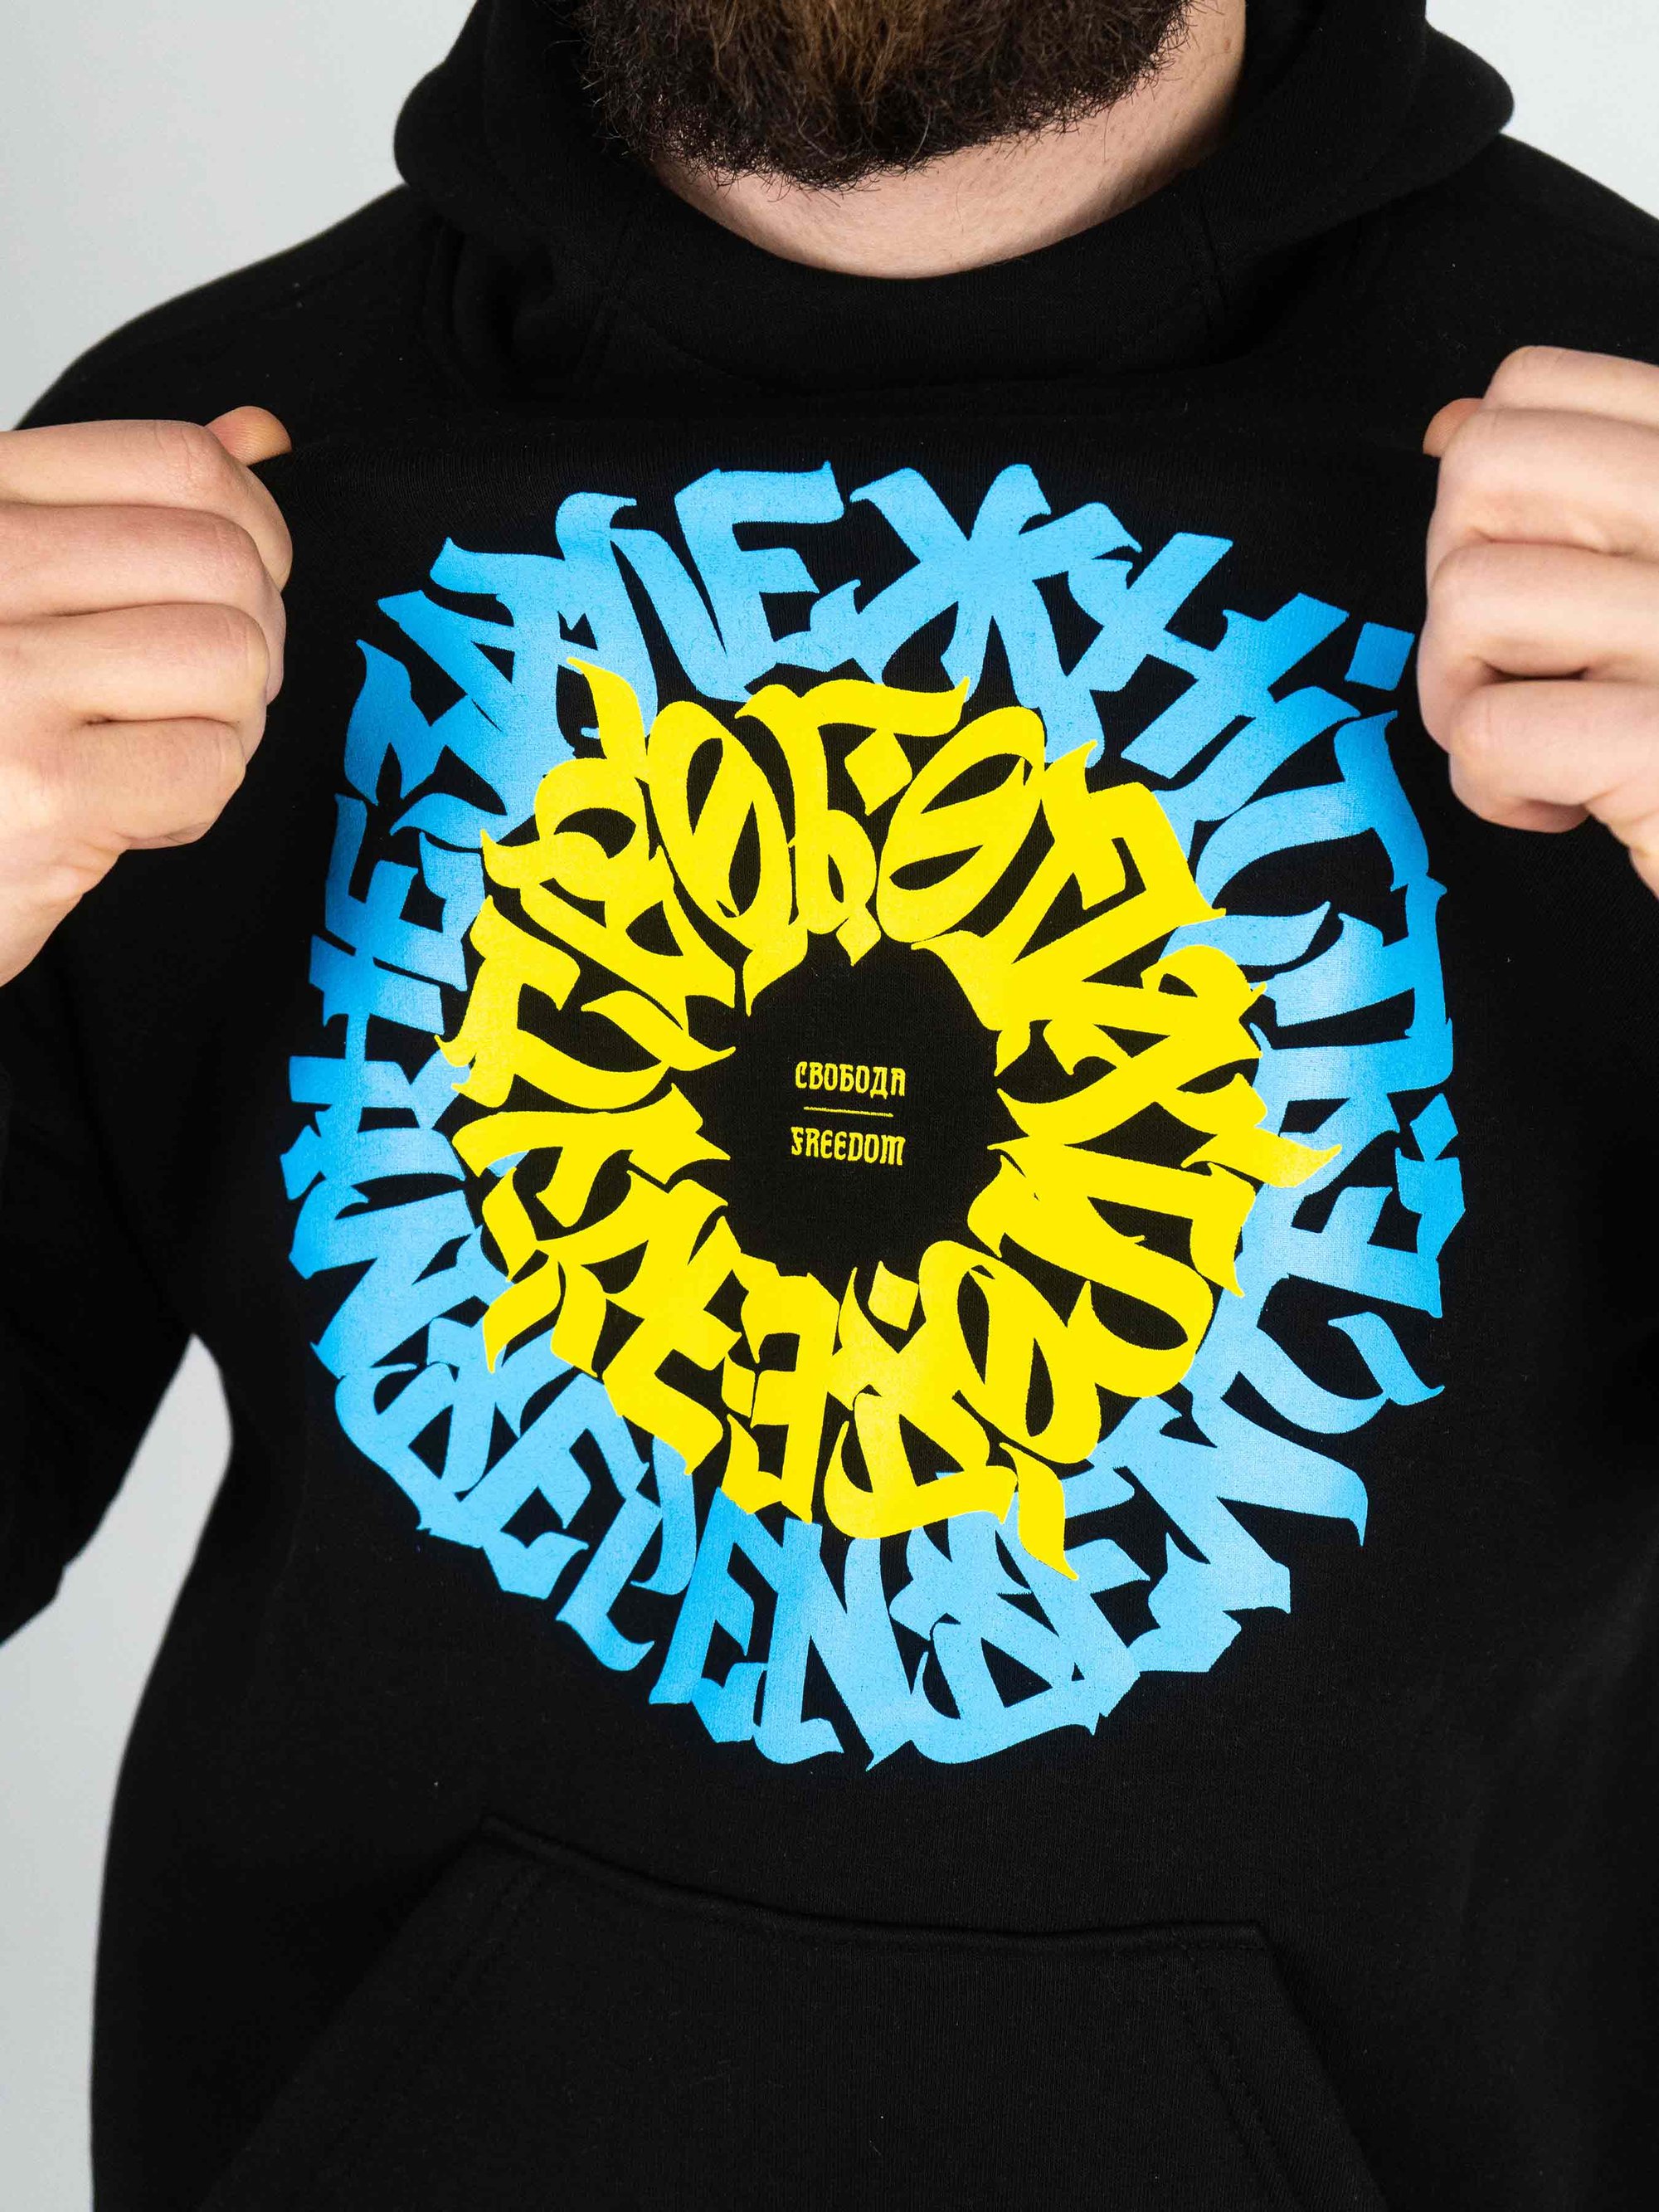 Худи утепленное черное Custom Wear Свобода голубовато-желтое лого - Фото 1